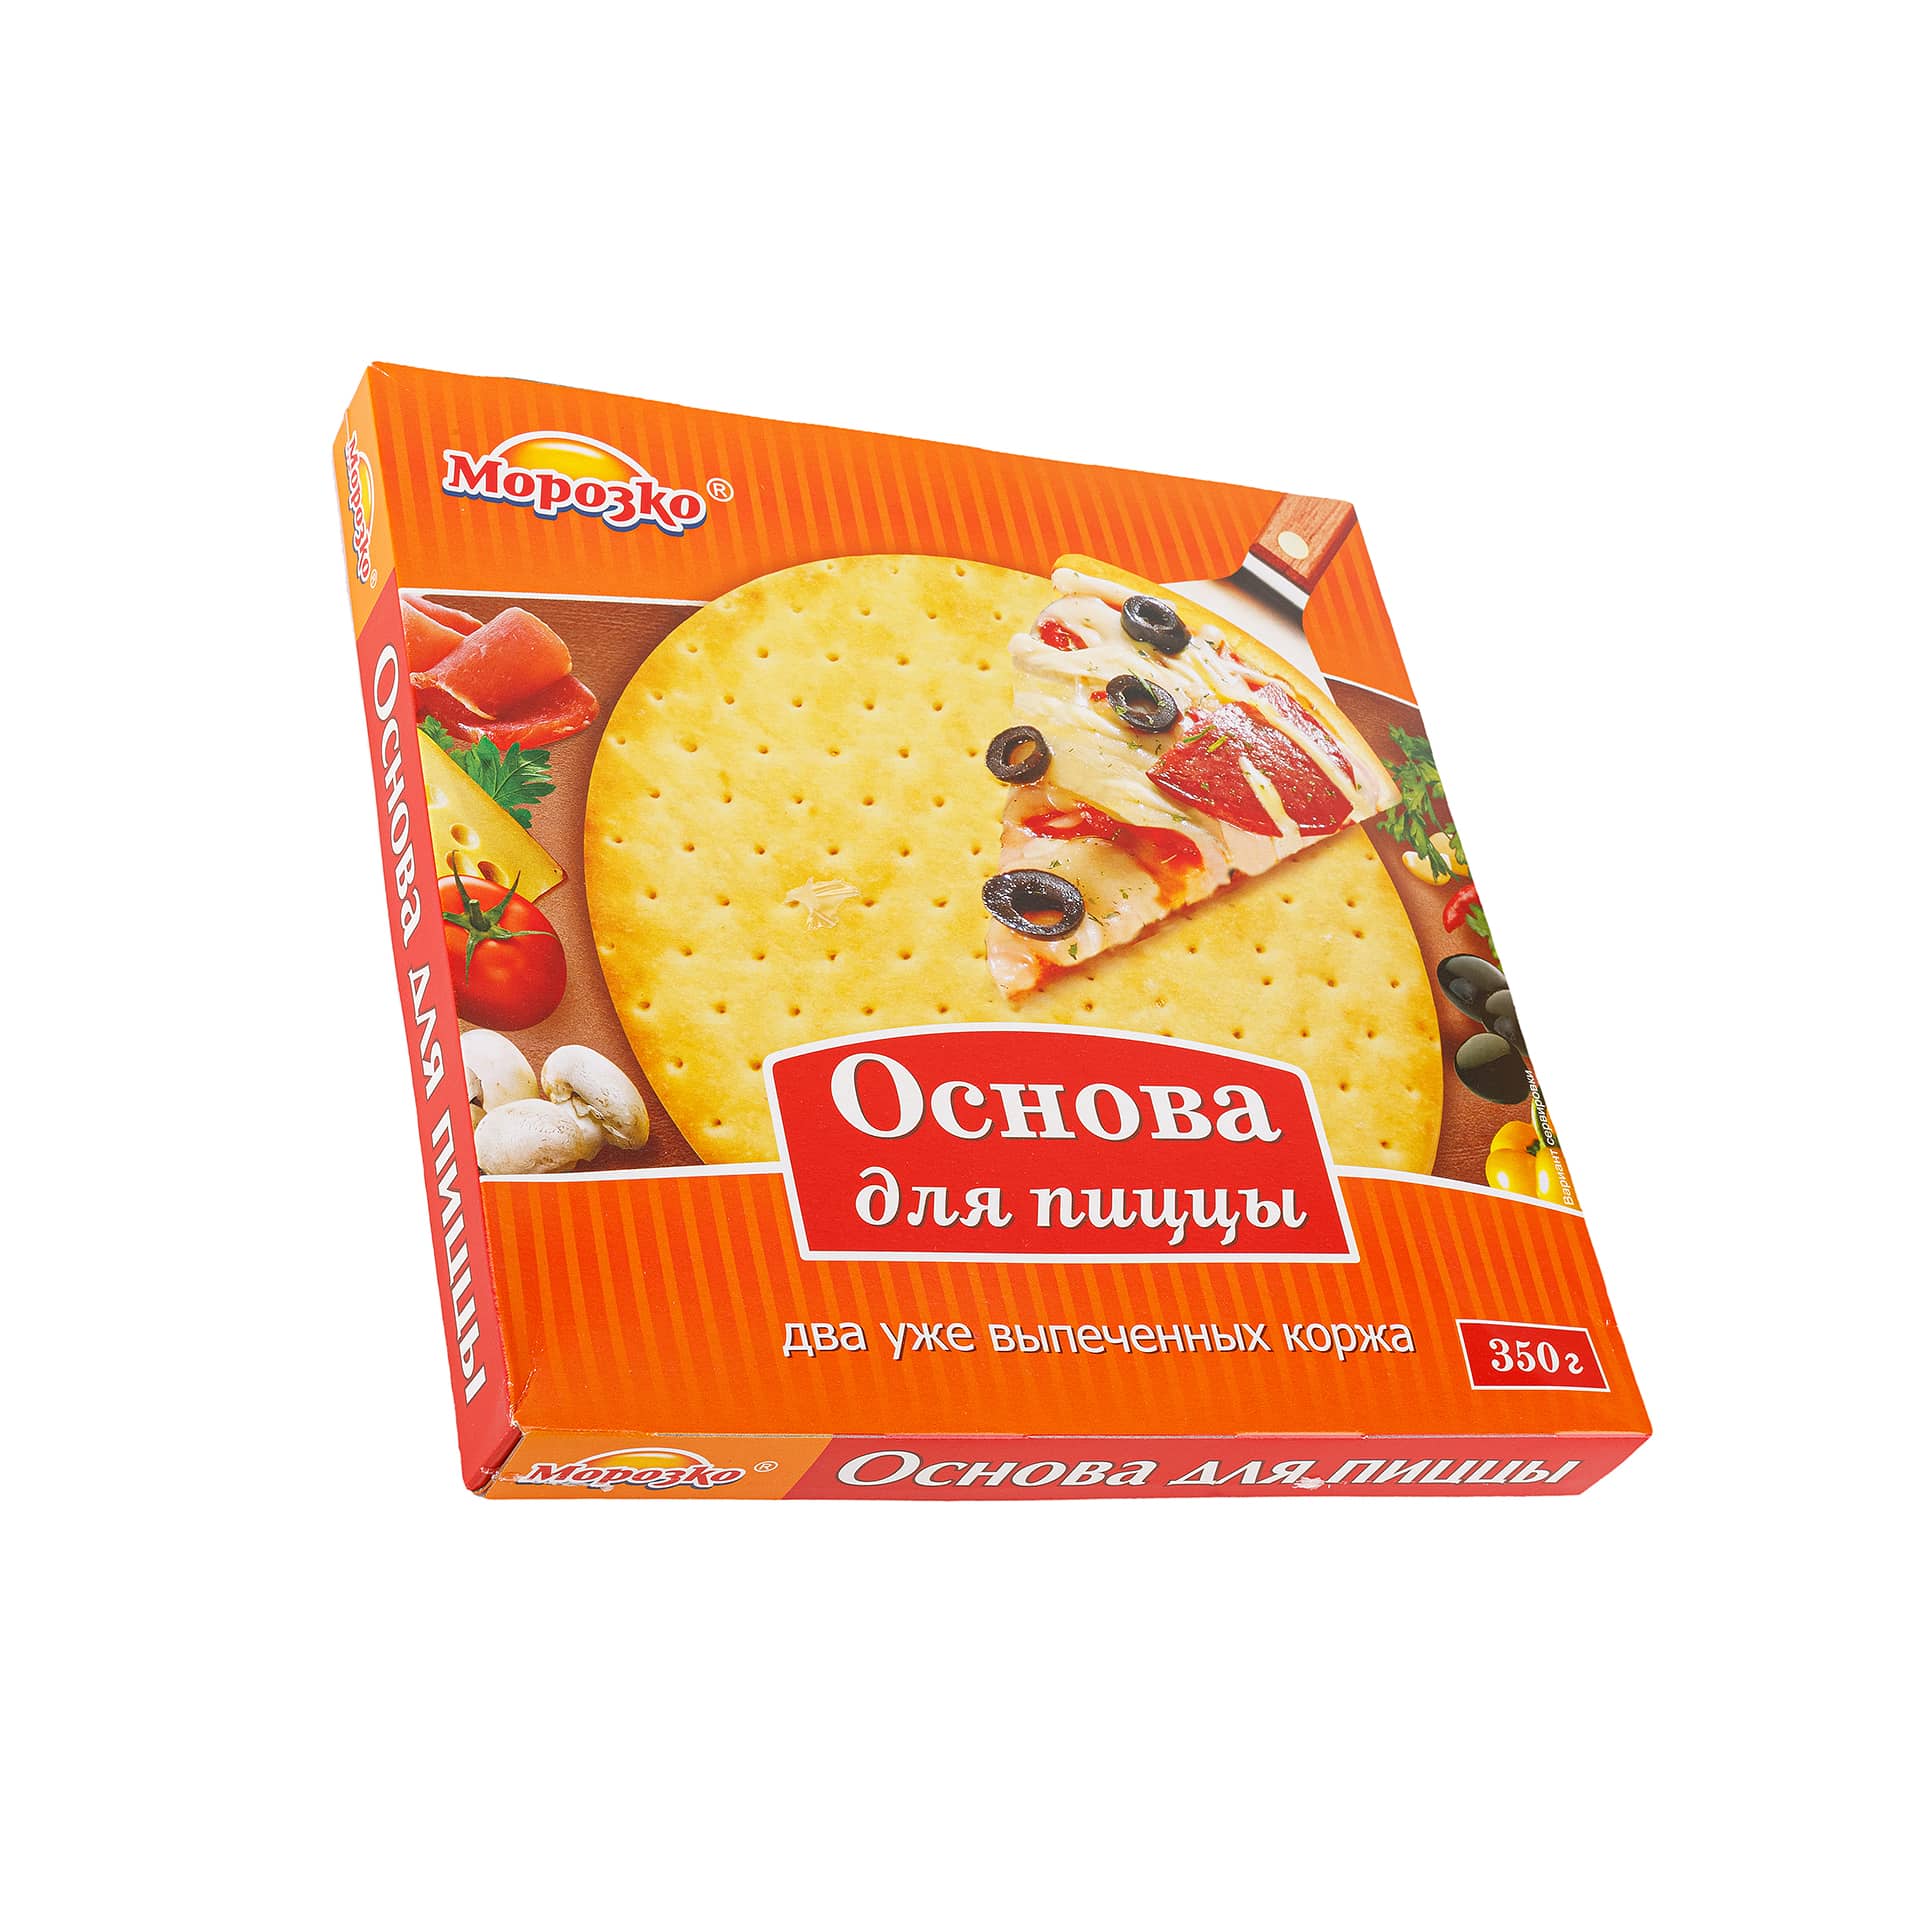 Основа для пиццы полуфабрикат замороженный Морозко 350 г 7514LED, общий вид, купить оптом с доставкой по москве и московской области, недорого, низкая цена